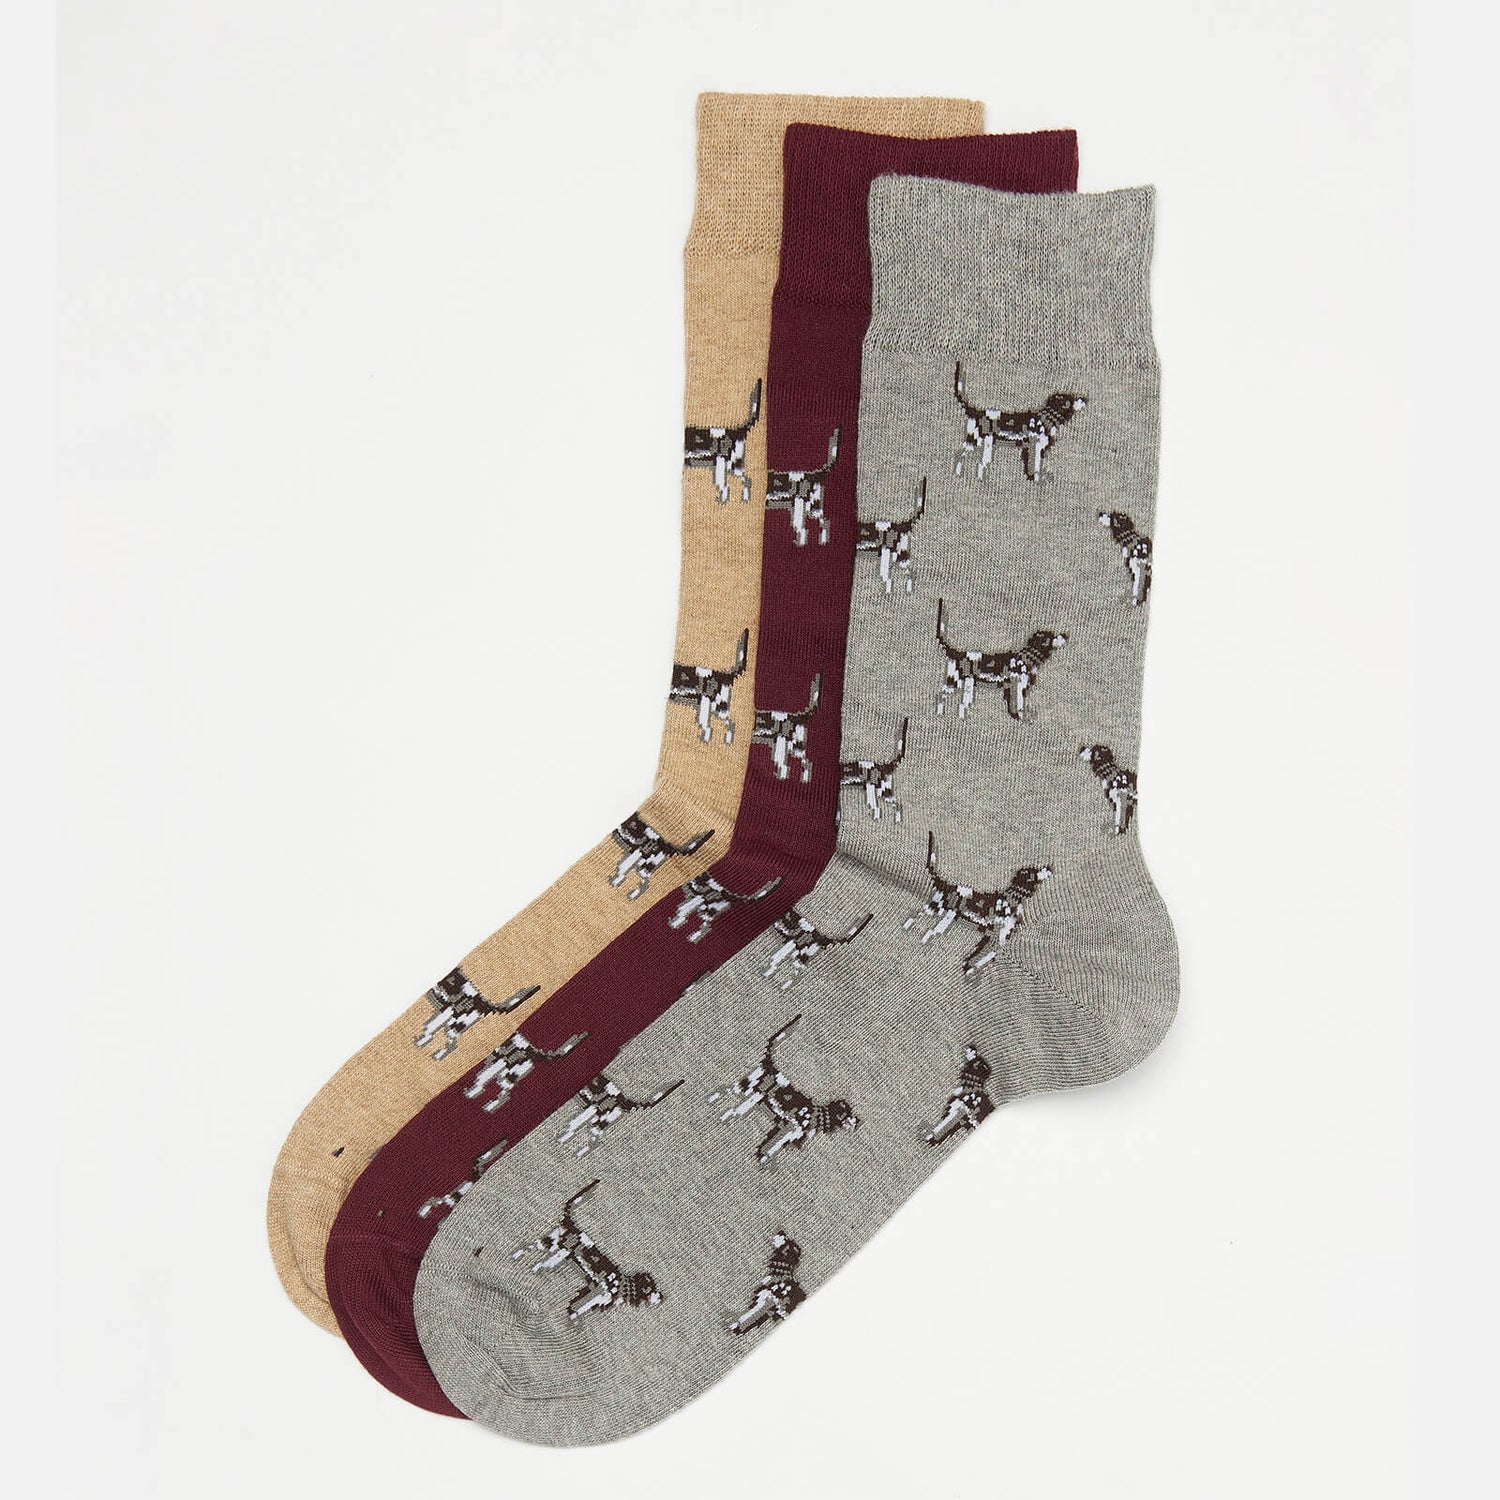 Barbour Men's Pointer Dog Socks Gift Box - Winter Red